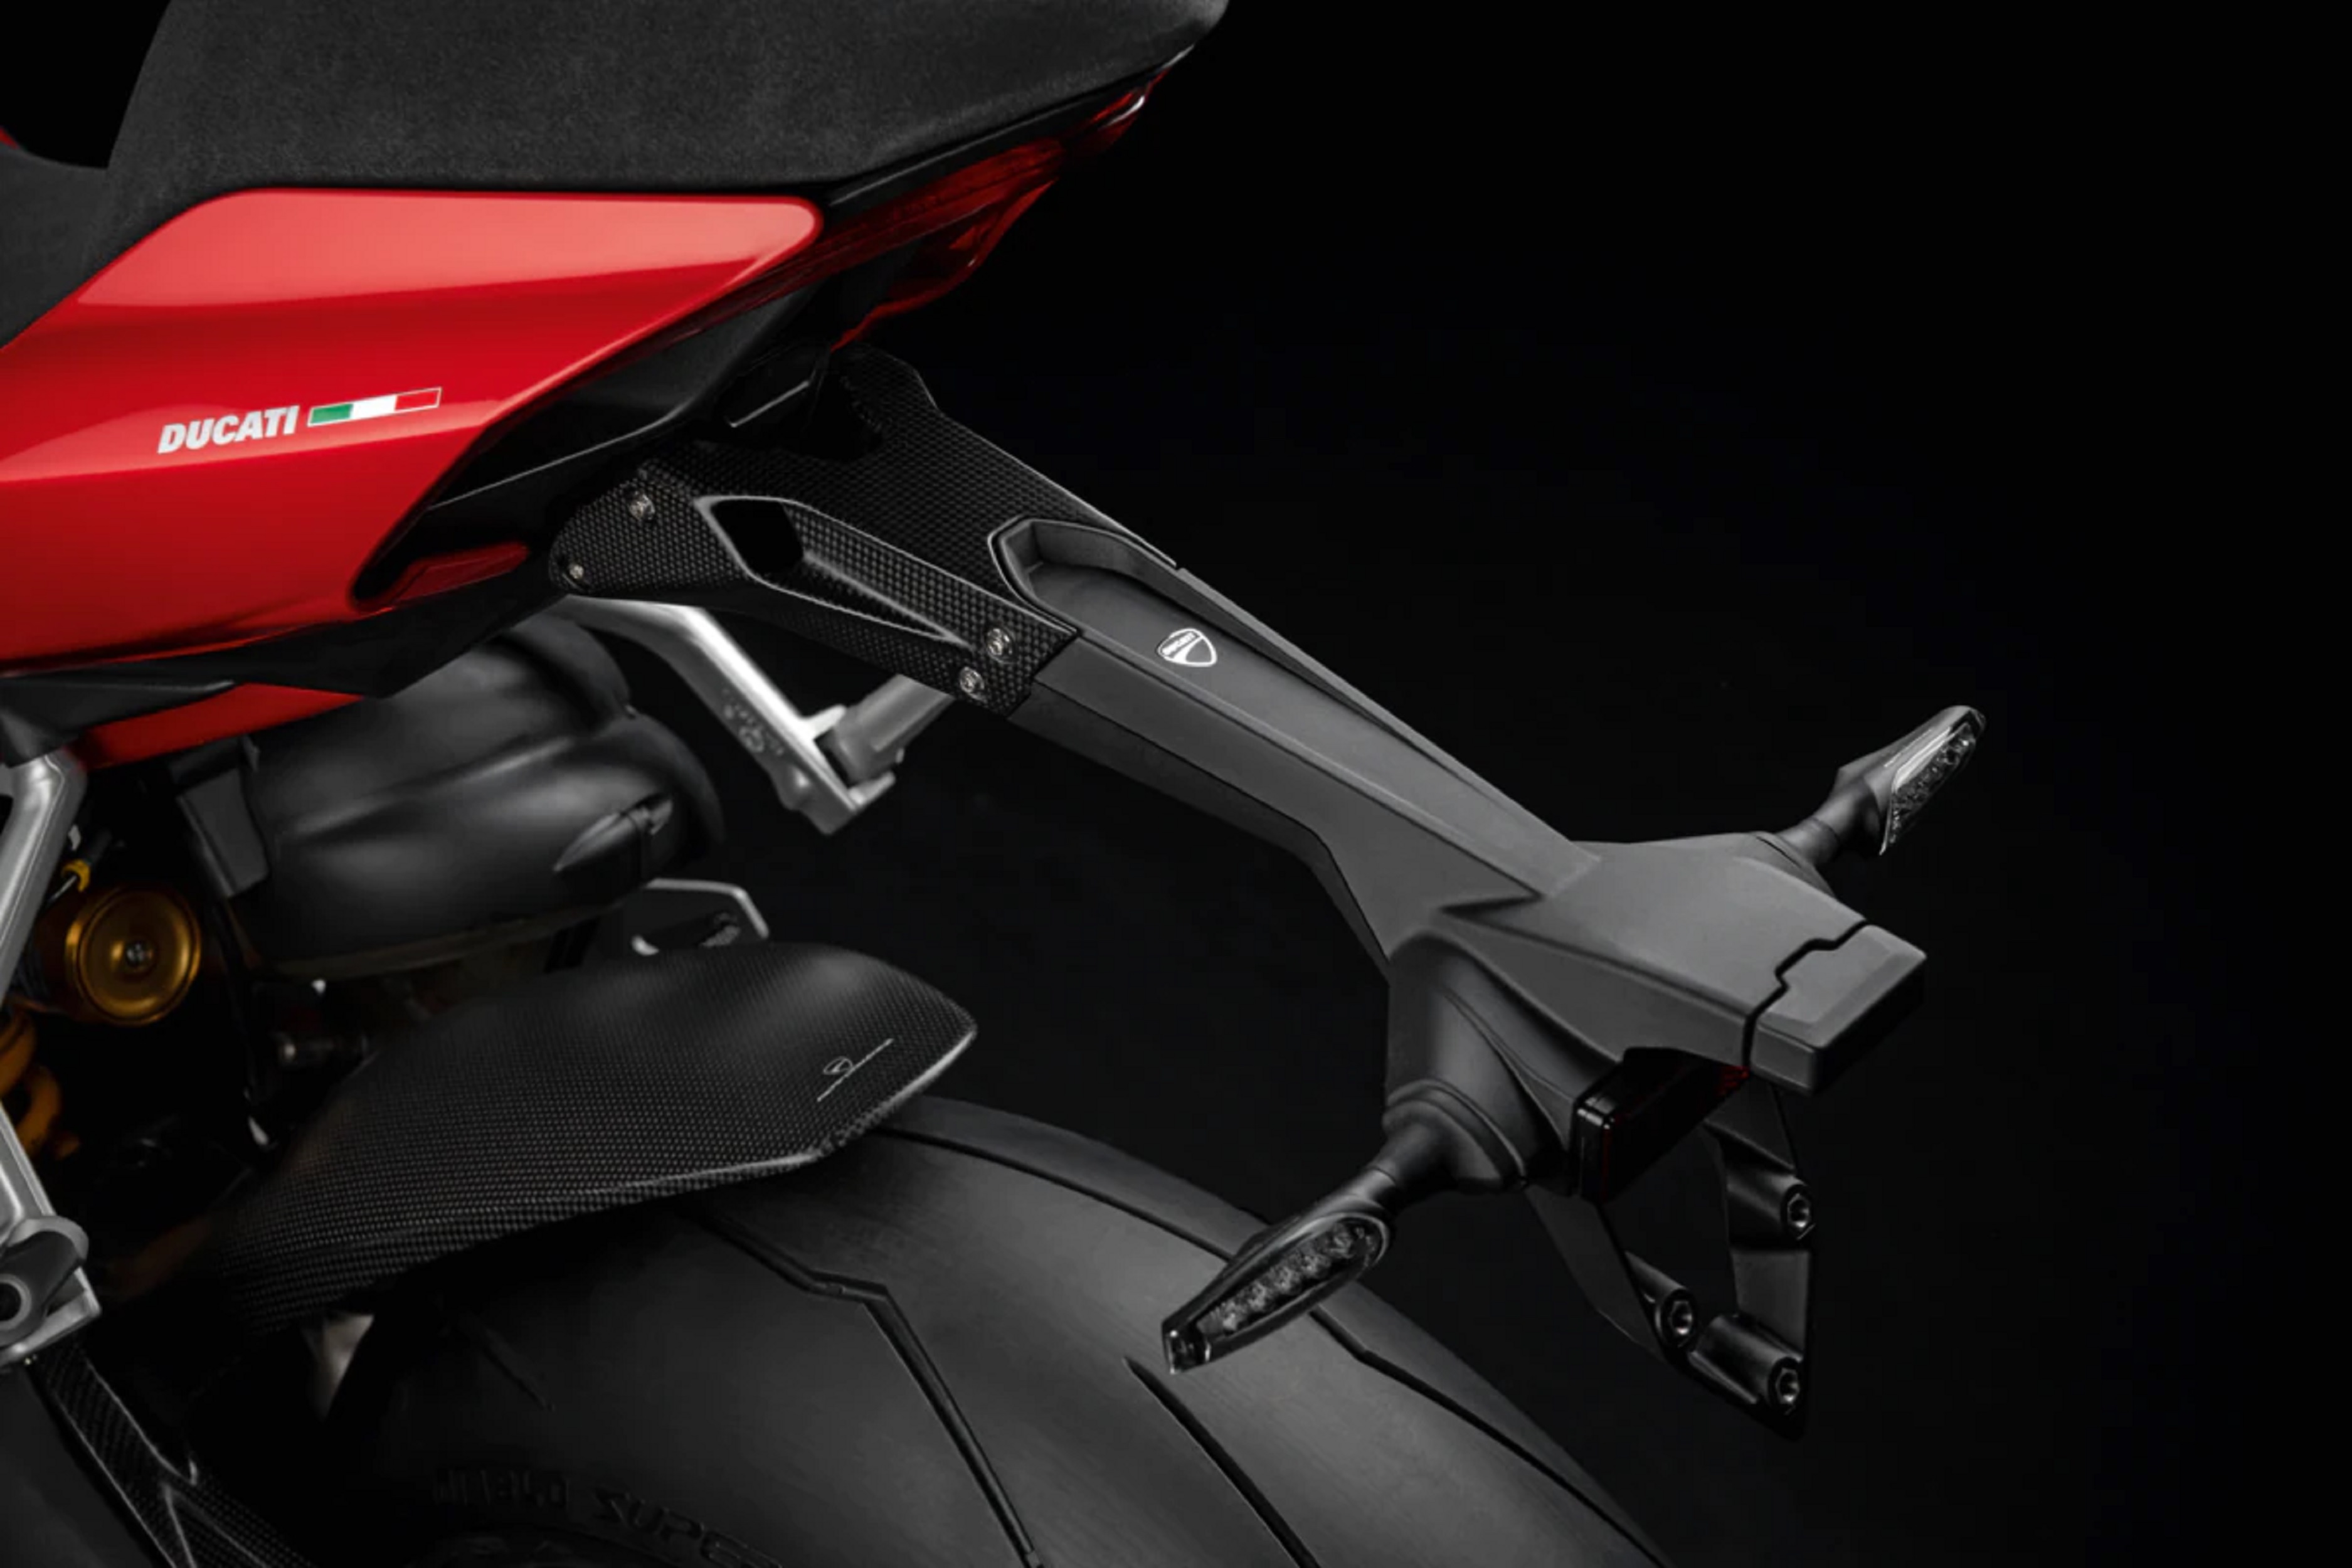 Ducati Kennzeichenhalter aus Carbon matt - Alex Bikeshop - Ducati ·  Kawasaki · Zubehör · Bekleidung kaufen